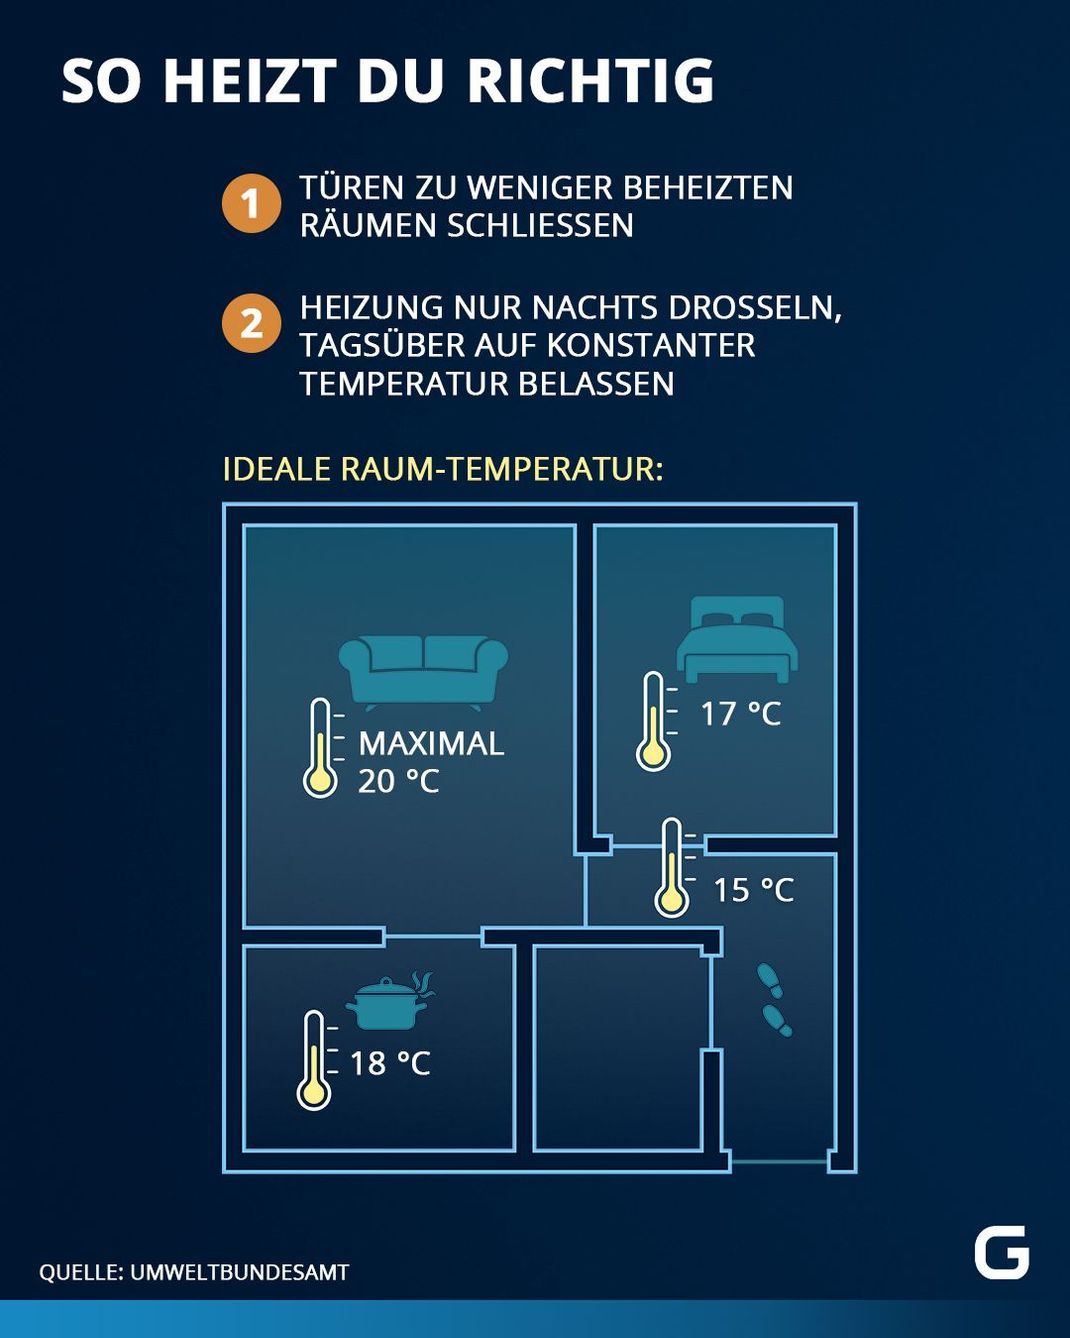 So heizt du richtig: Diese Temperaturen sollten in deinen Zimmern herrschen.